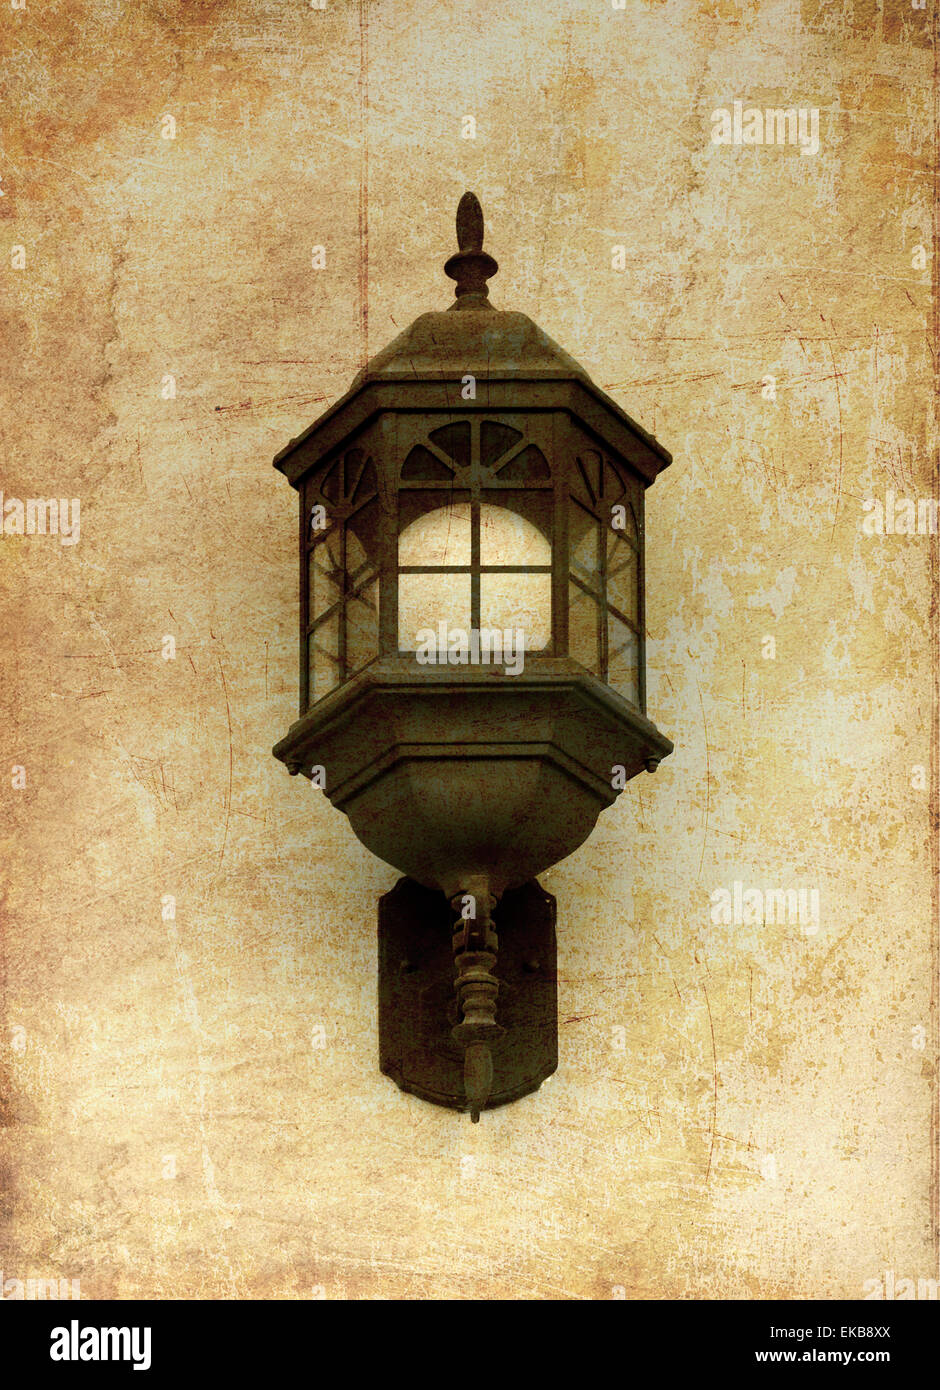 Vintage lámpara de la calle, en el viejo estilo de imagen fotográfica Foto de stock